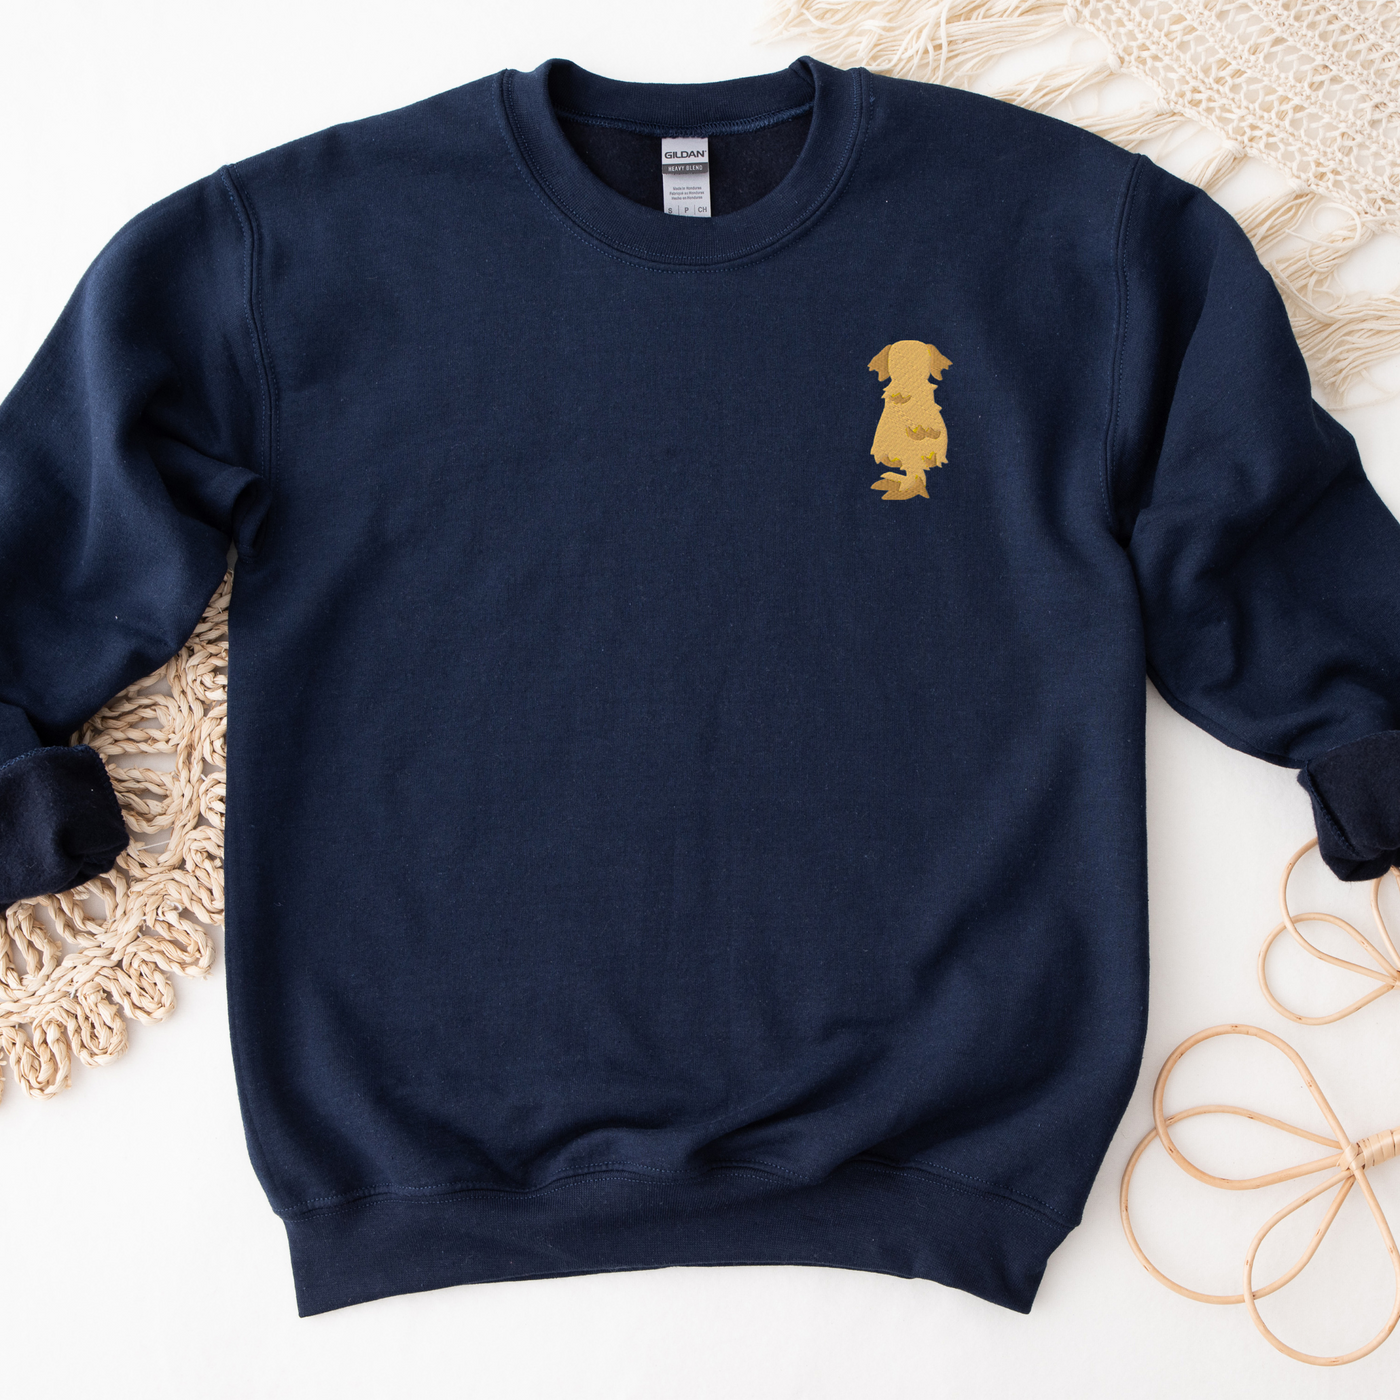 Golden Retriever Embroidered Sweatshirt